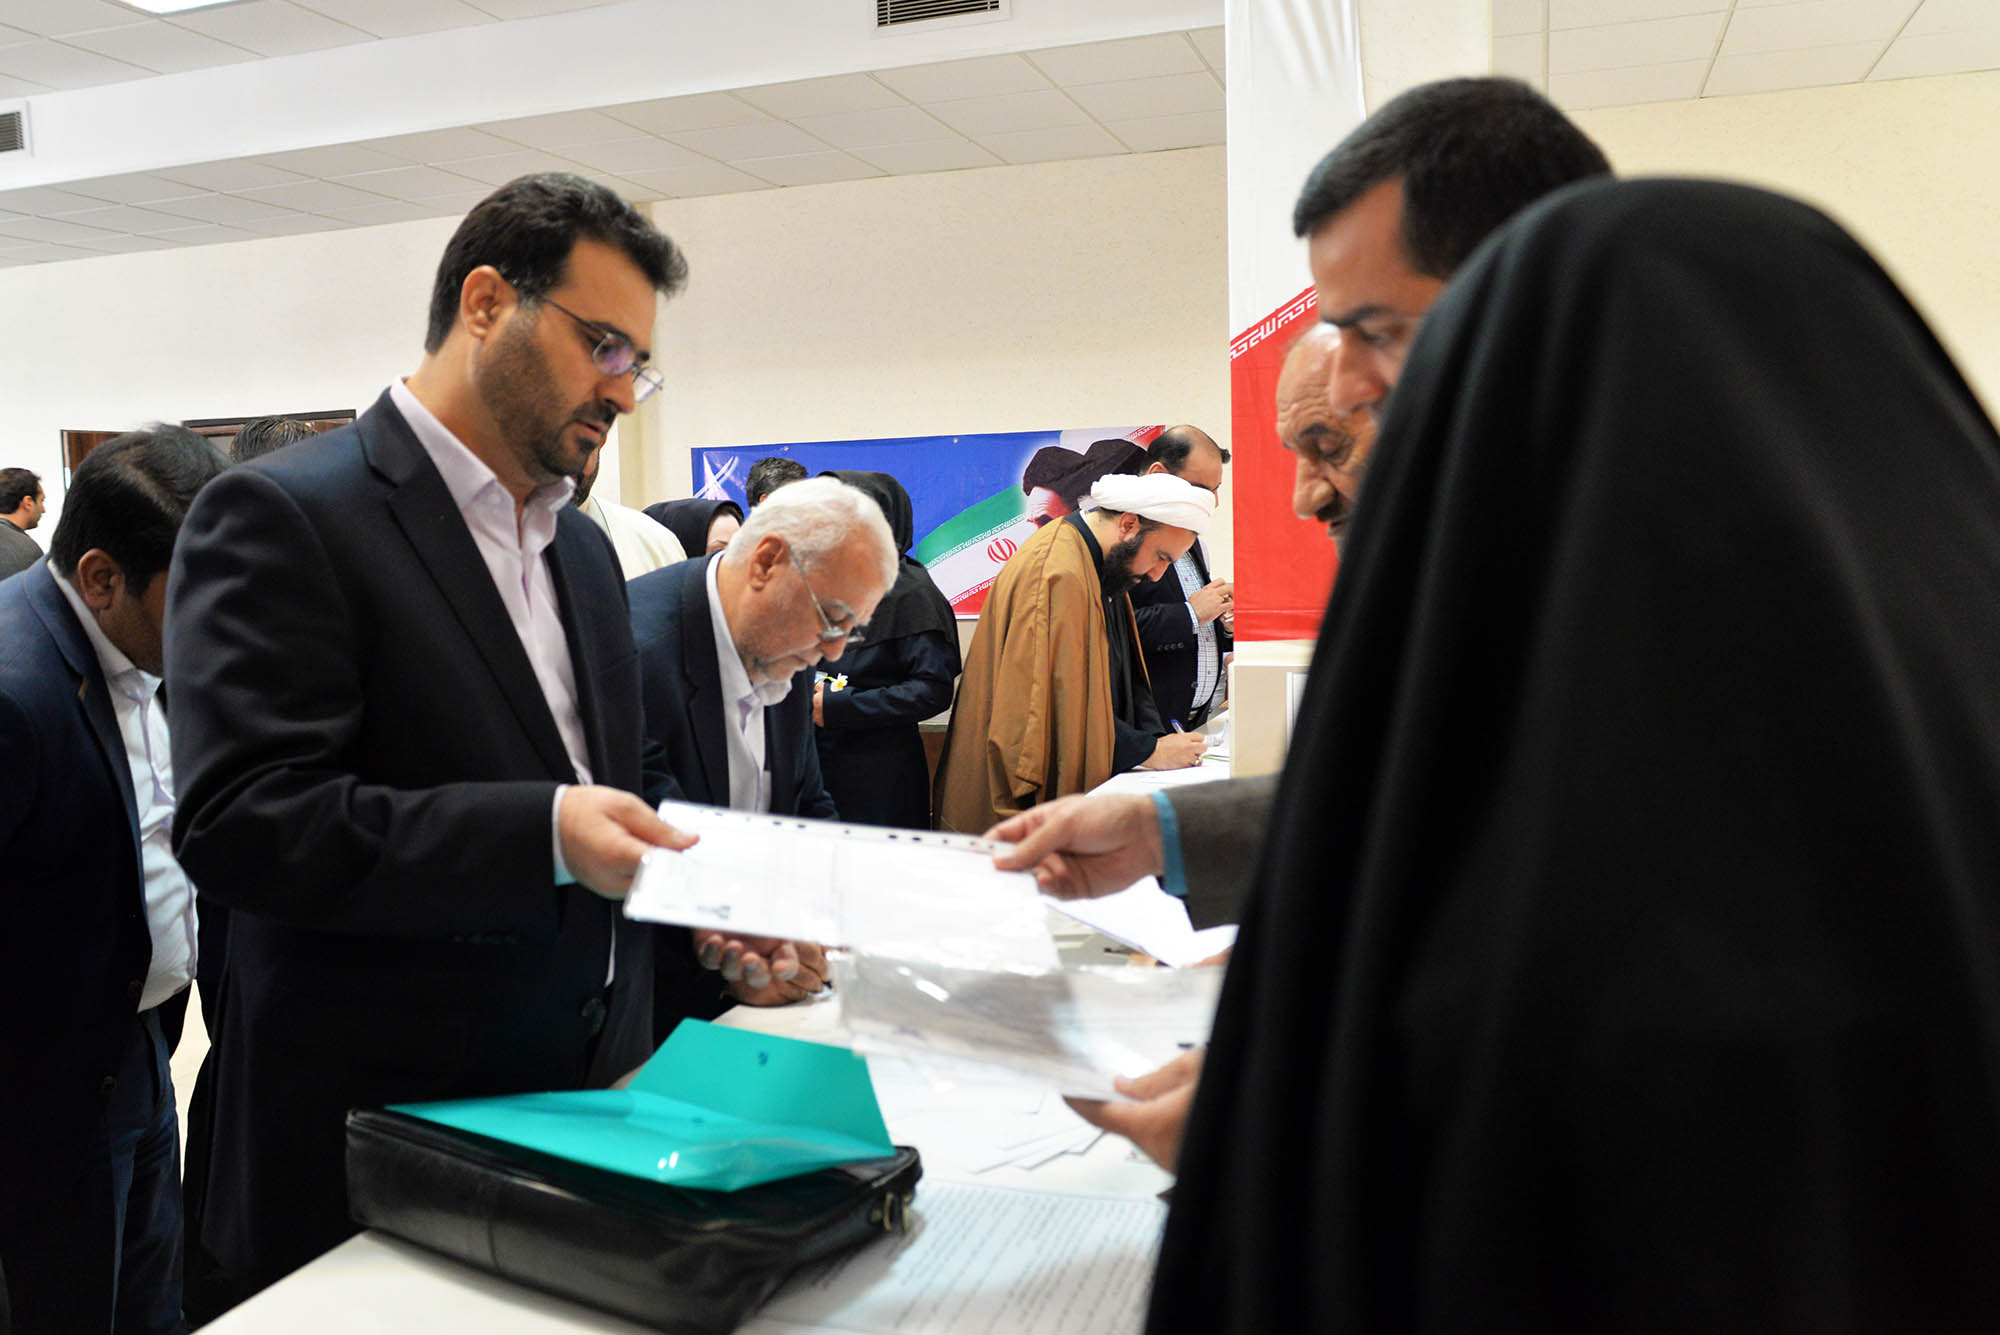 ثبت نام نامزدهای انتخابات مجلس در شیراز